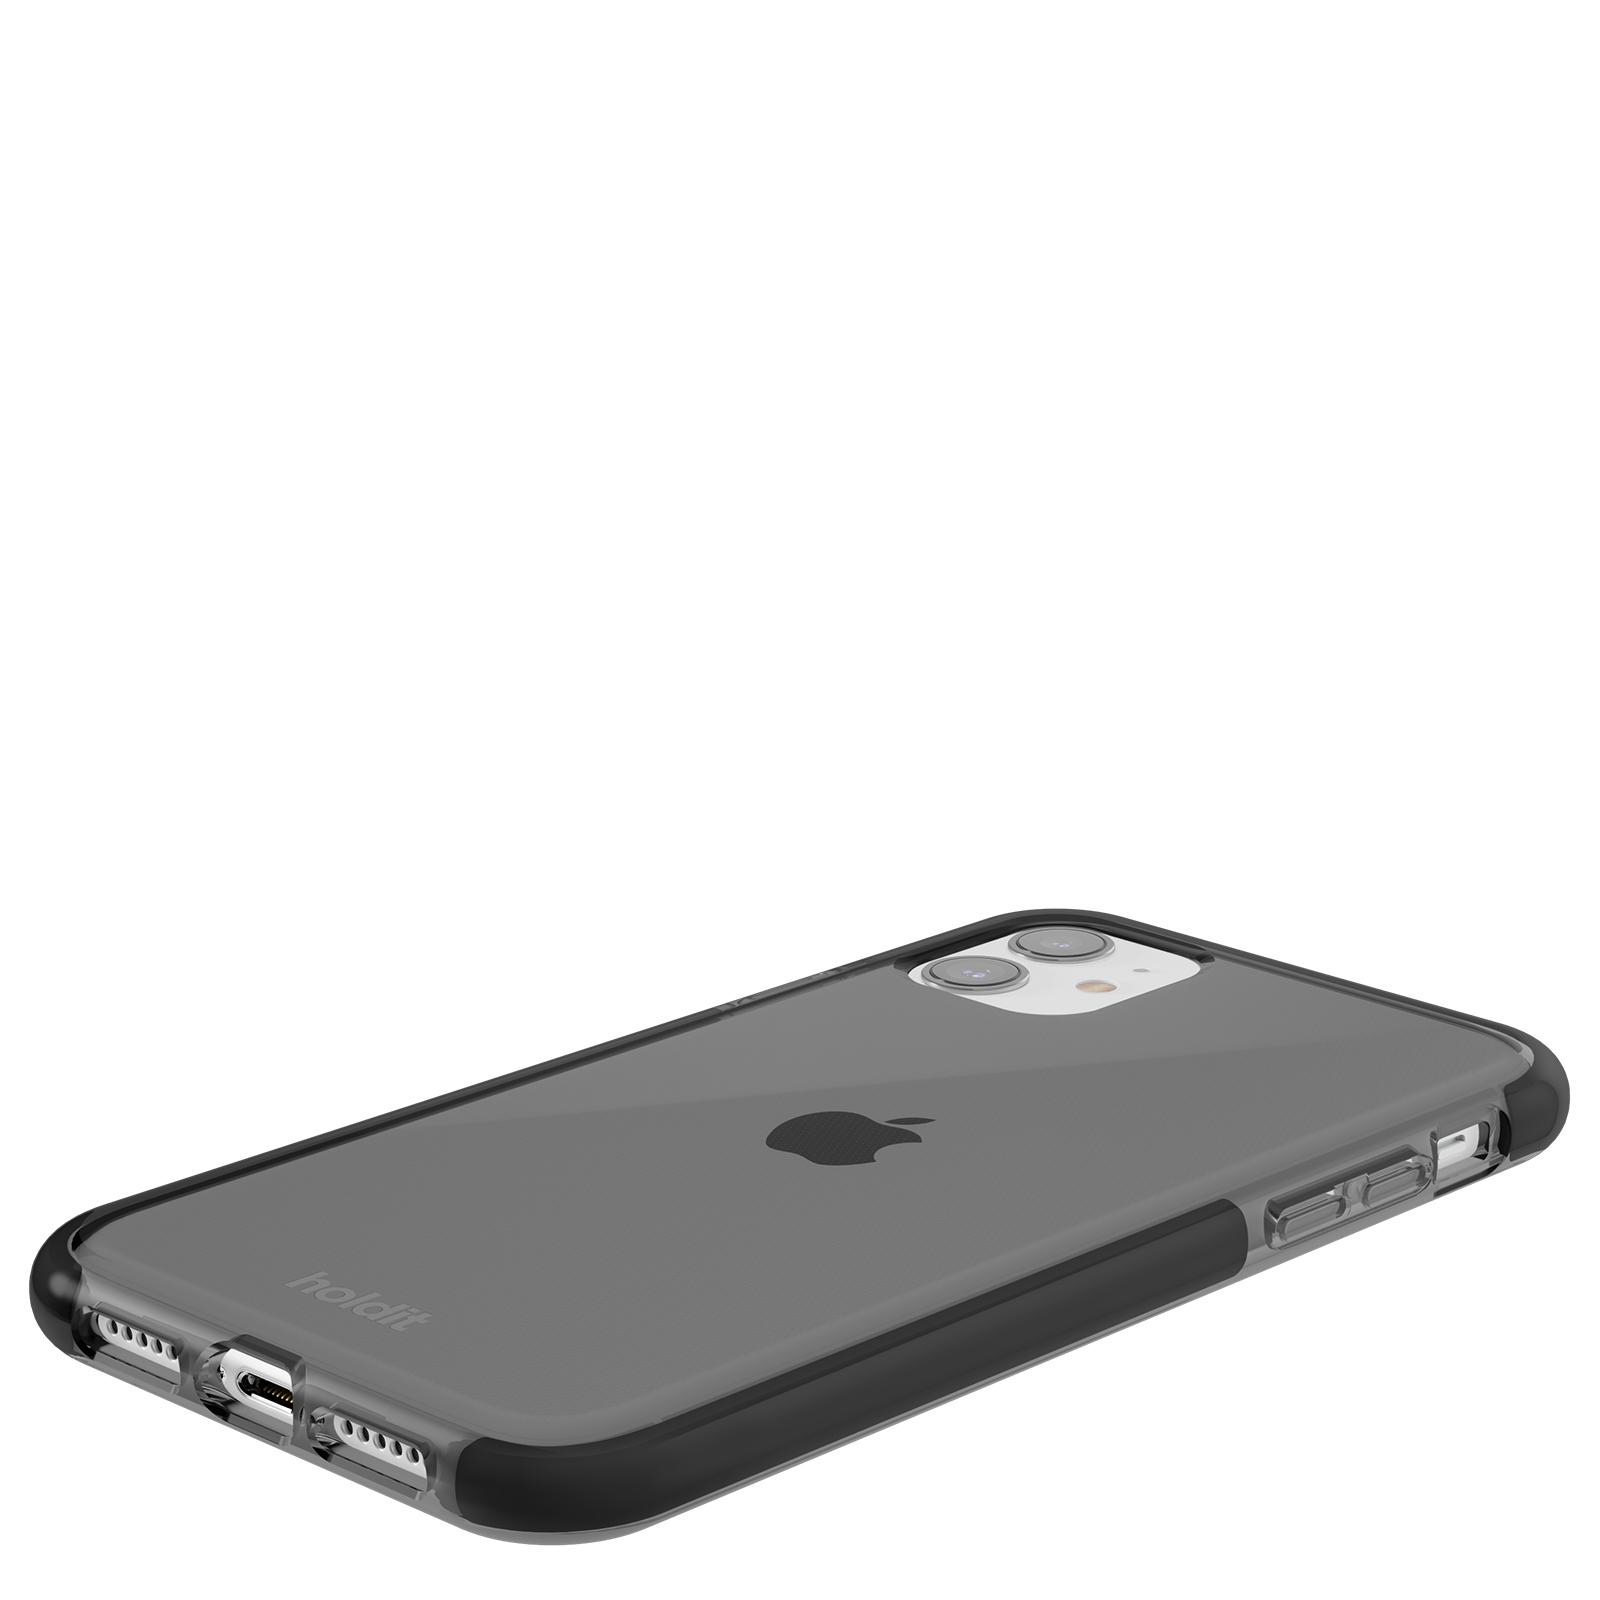 HOLDIT Seethru Case, Apple, Backcover, iPhone 11/XR, Black